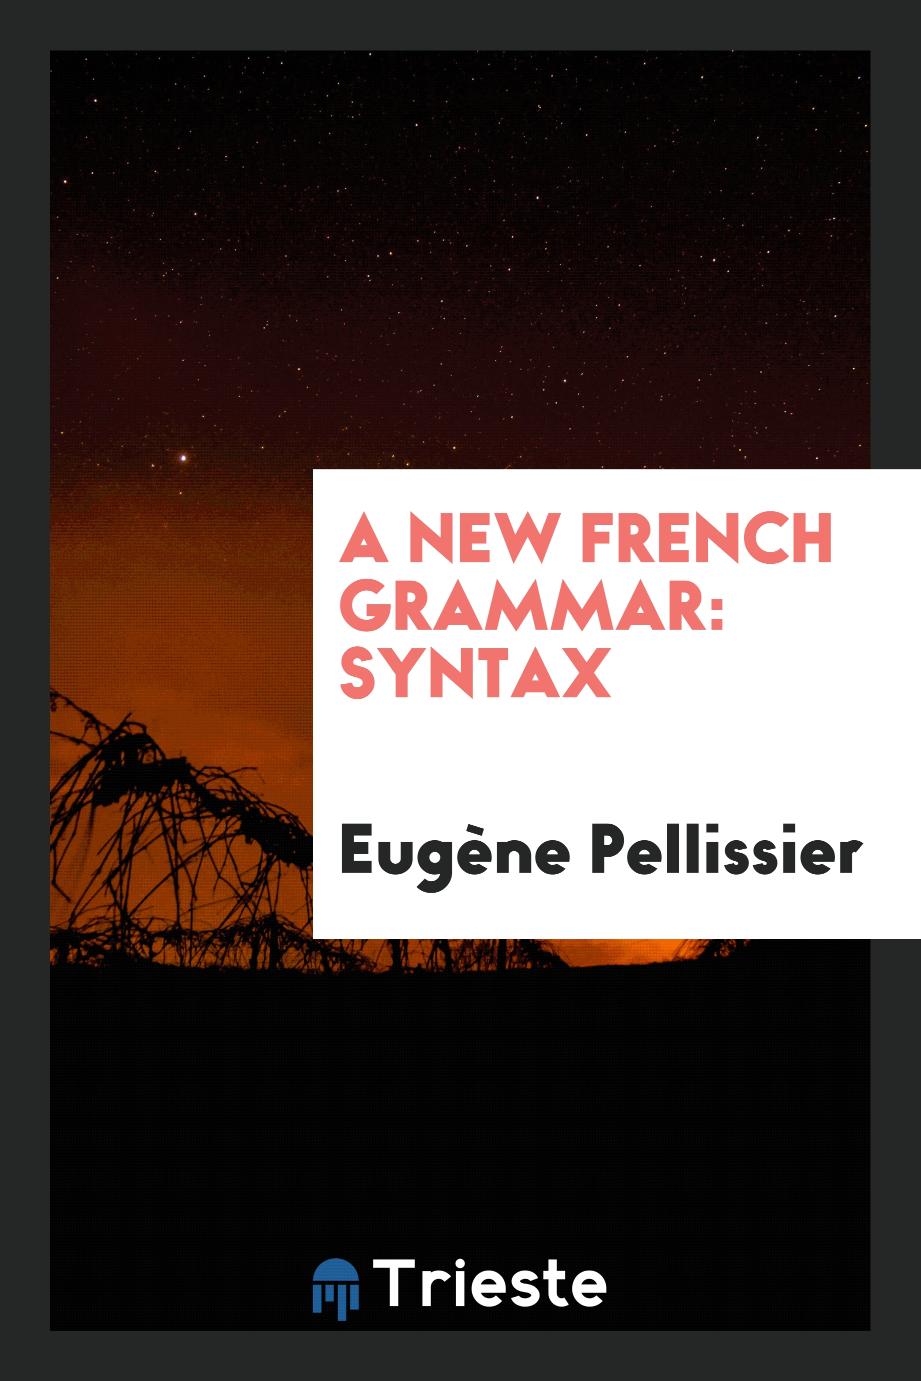 A new French grammar: Syntax